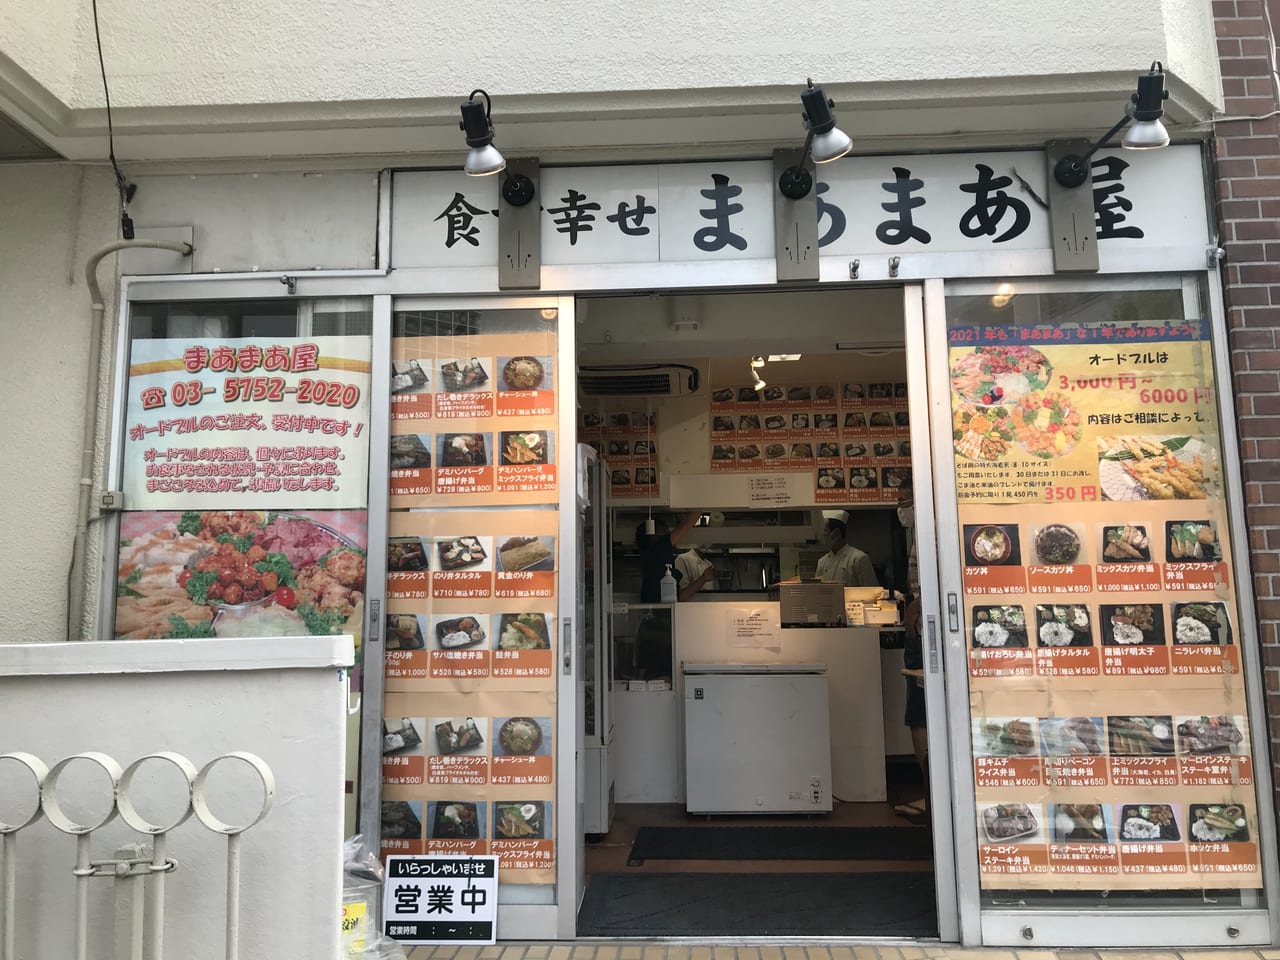 世田谷区駒沢のお弁当屋さん幸せを食す「まあまあ屋」